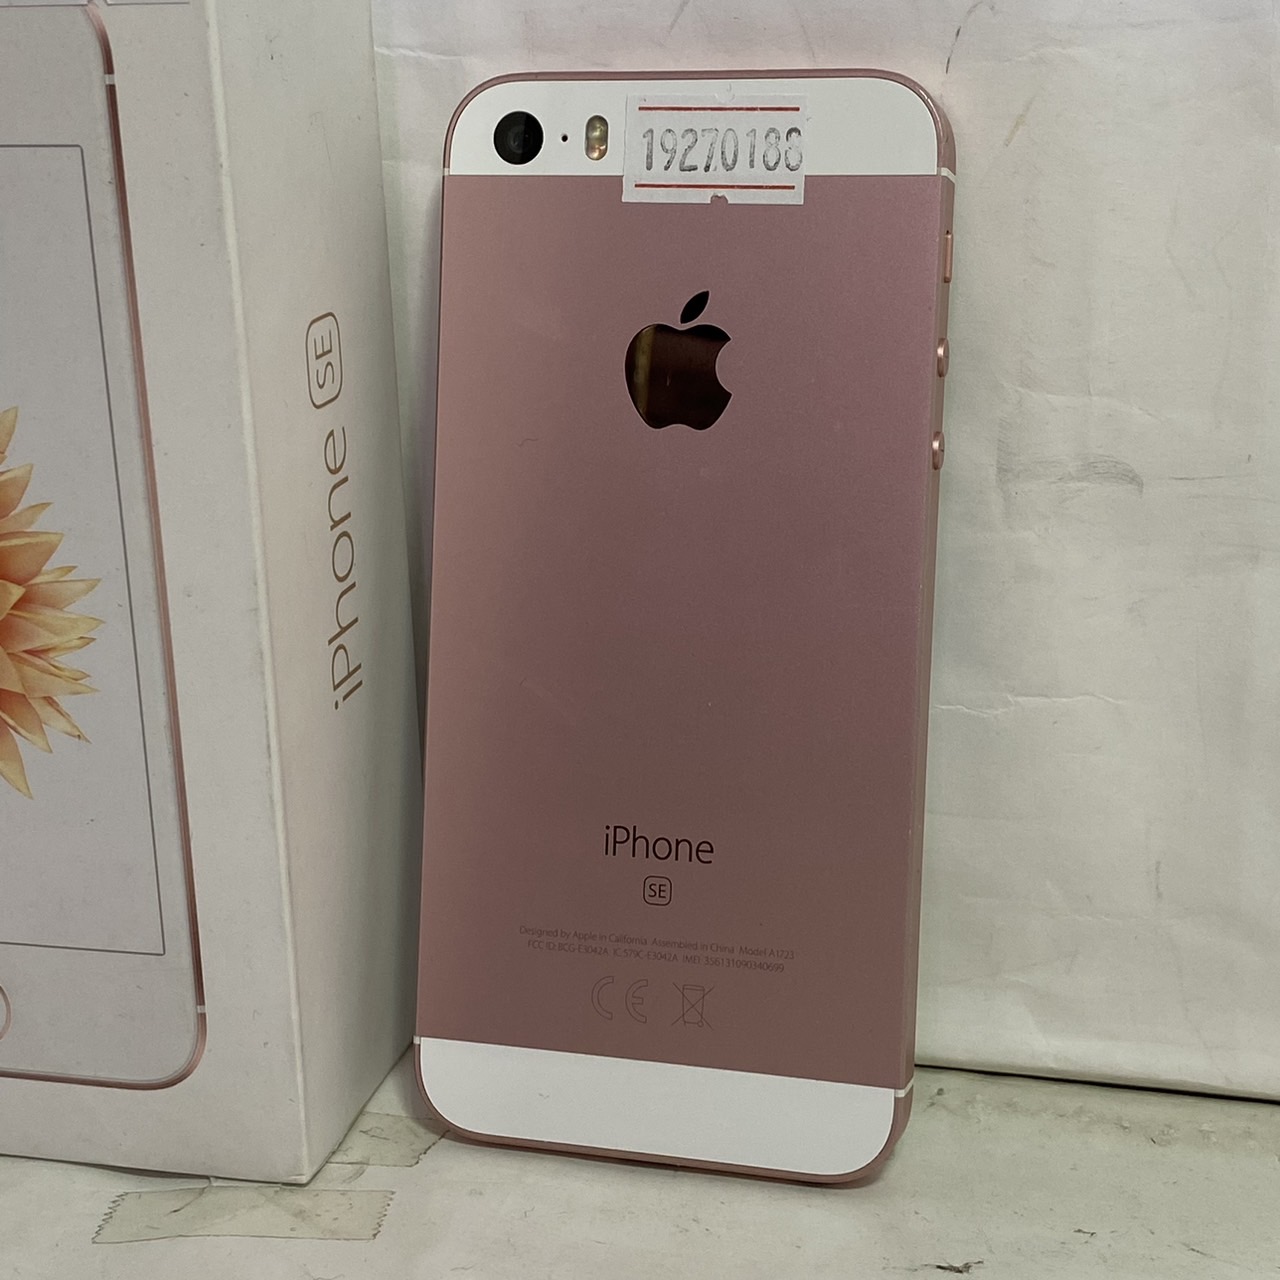 APPLE(アップル) iPhone SE 32GB [ピンク] A1723の激安通販 - パソコン